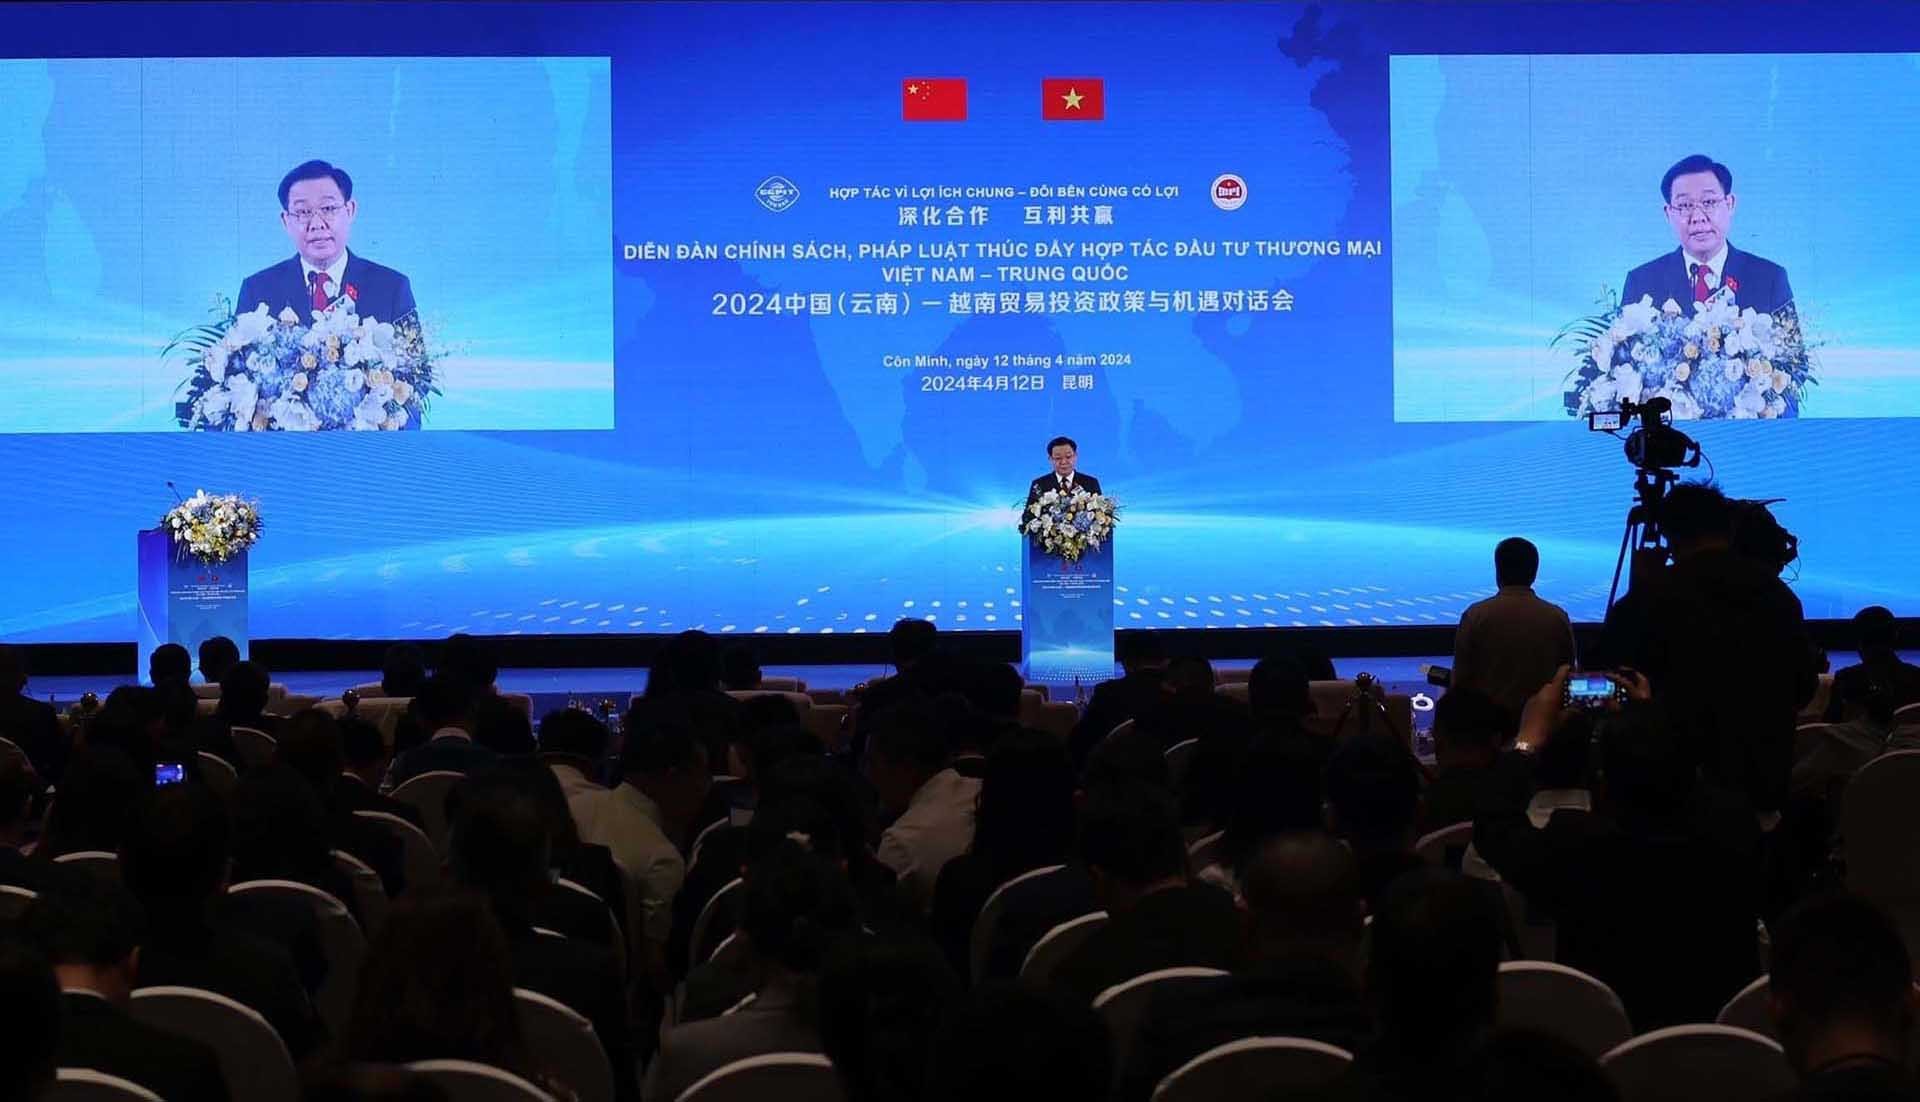 Diễn đàn Chính sách pháp luật thúc đẩy hợp tác đầu tư, thương mại Việt Nam-Trung Quốc